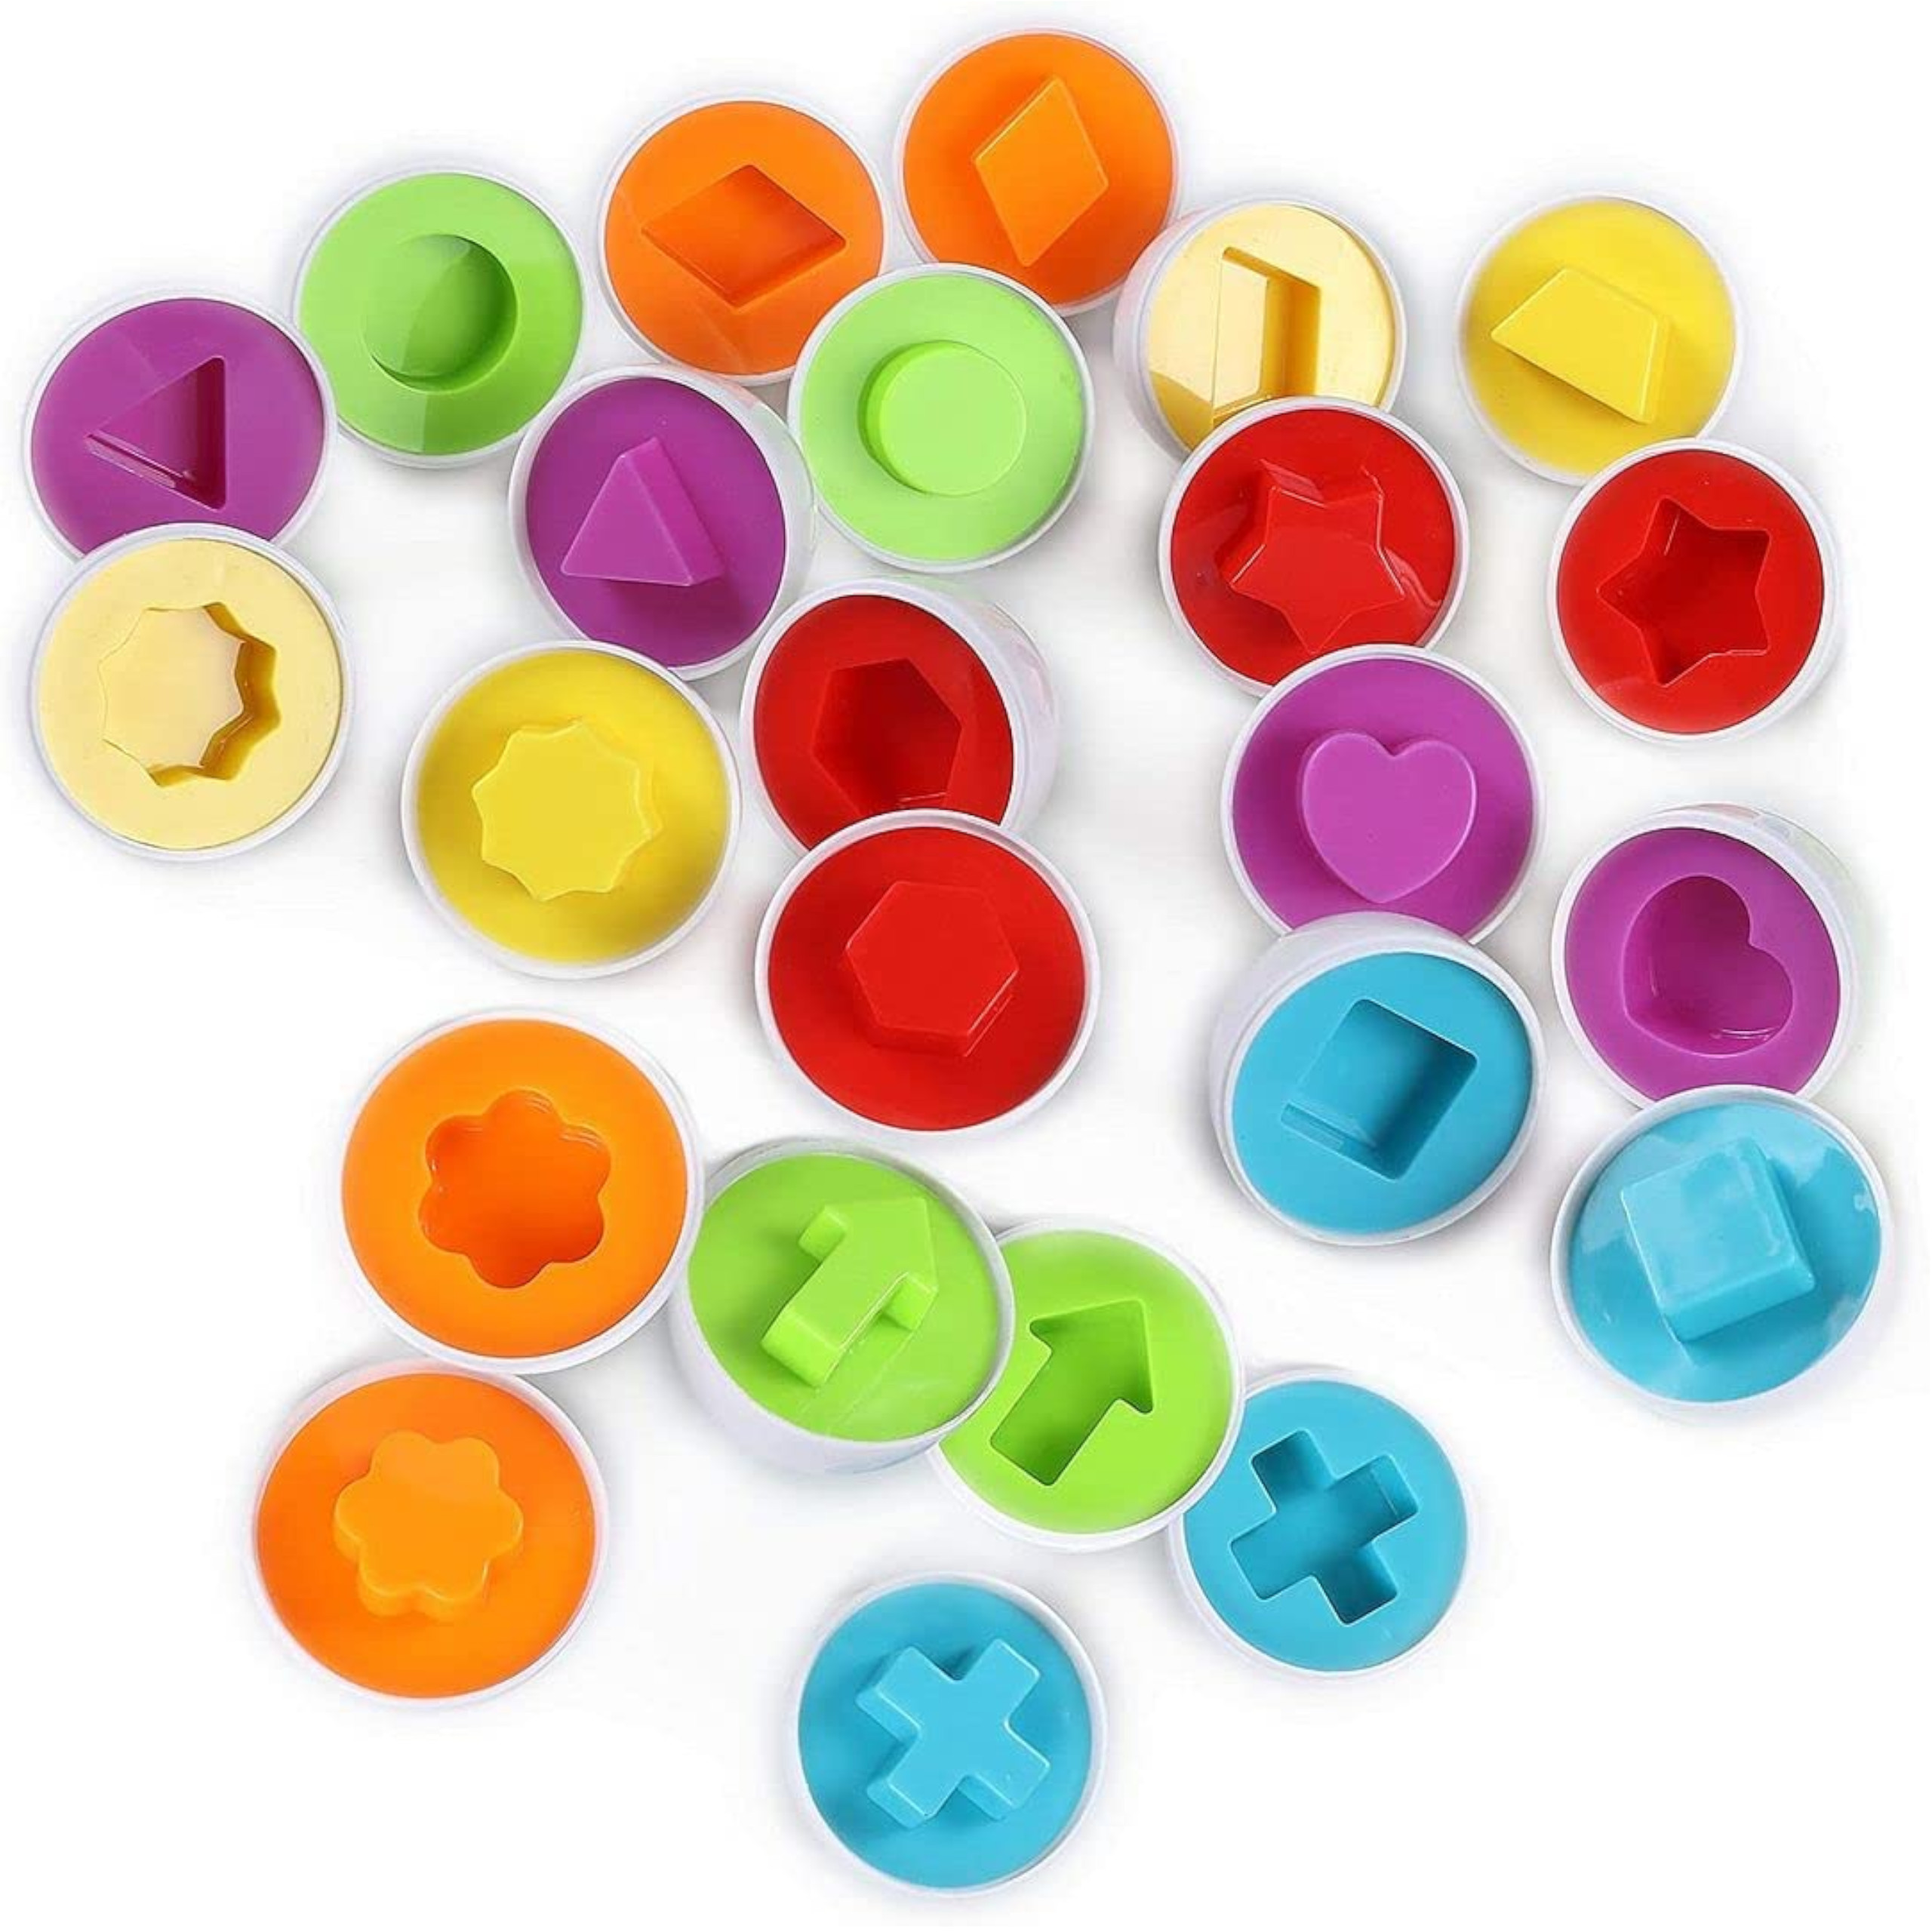 Układanka sorter jajka Montessori kształty LB33-3 Głębokość produktu 28 cm